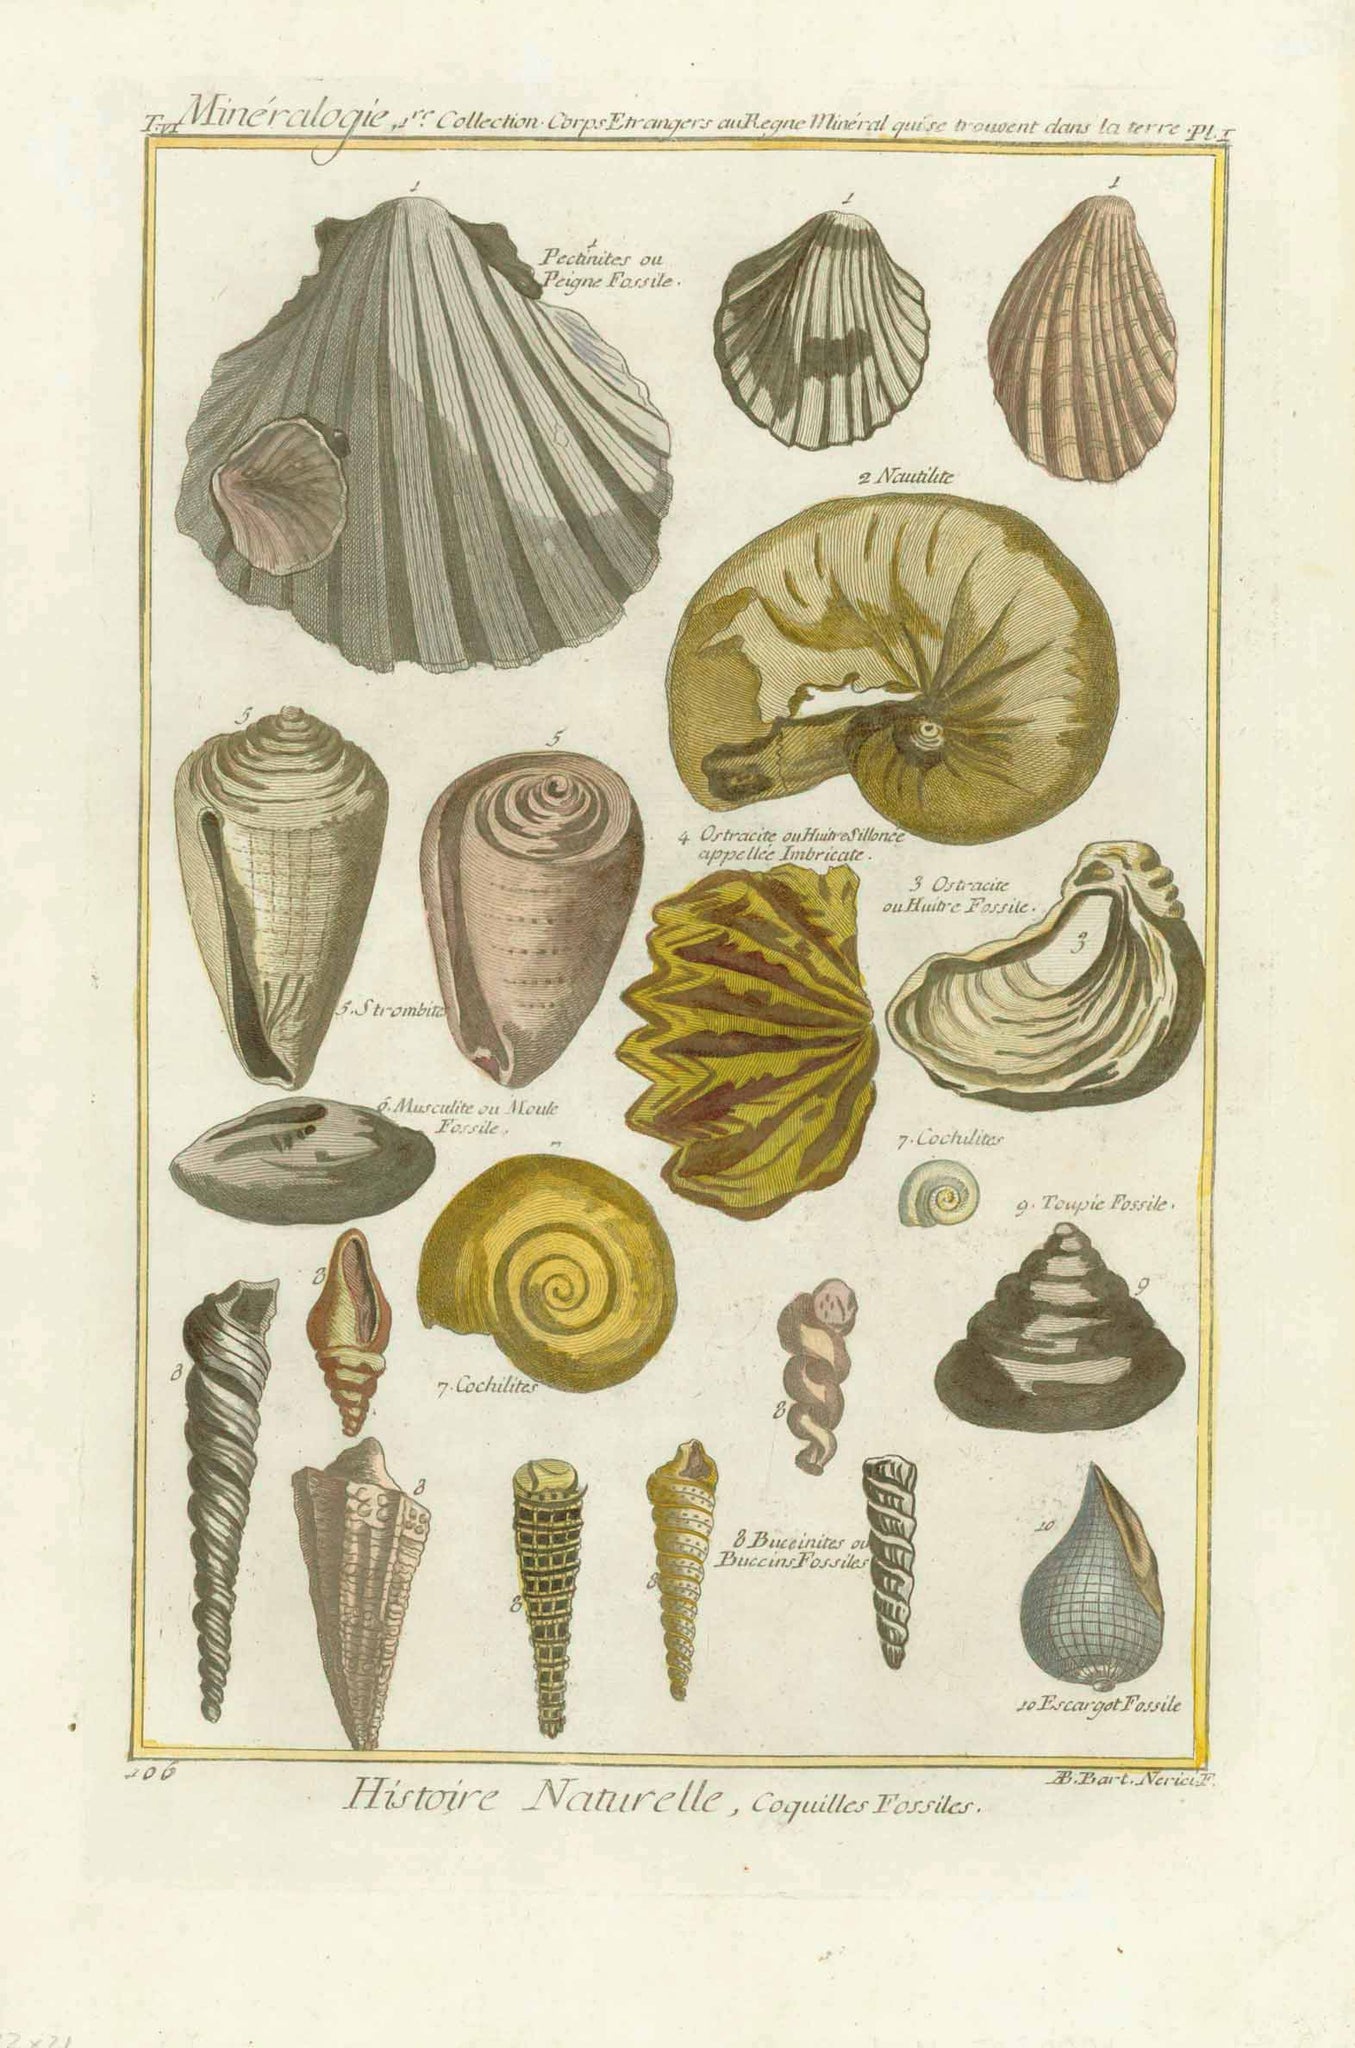 "Mineralogie Collection Corps estrangers au Regne Mineral qui se trouvent dans la terre"  " Histoire Naturell, Coquilles Fossiles" (fossilized shells)